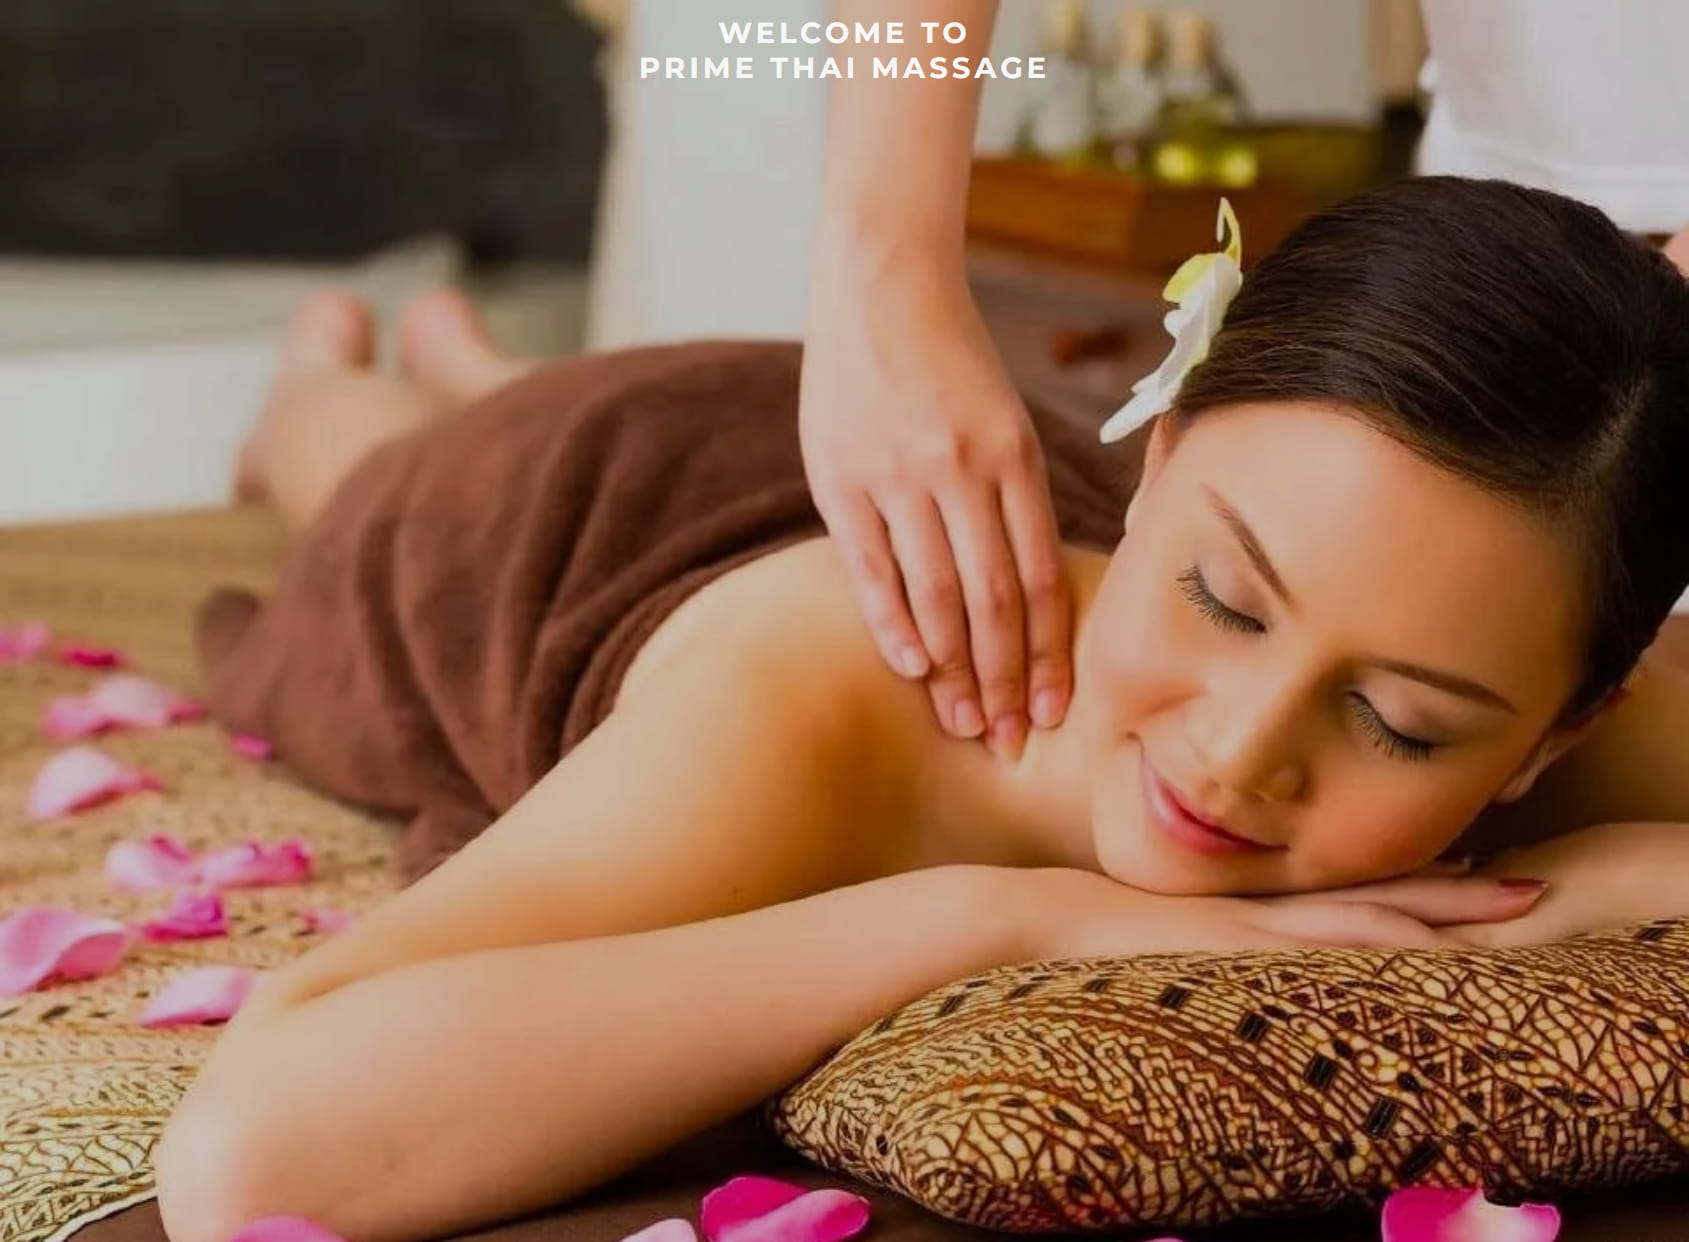 Prime Thai Massage